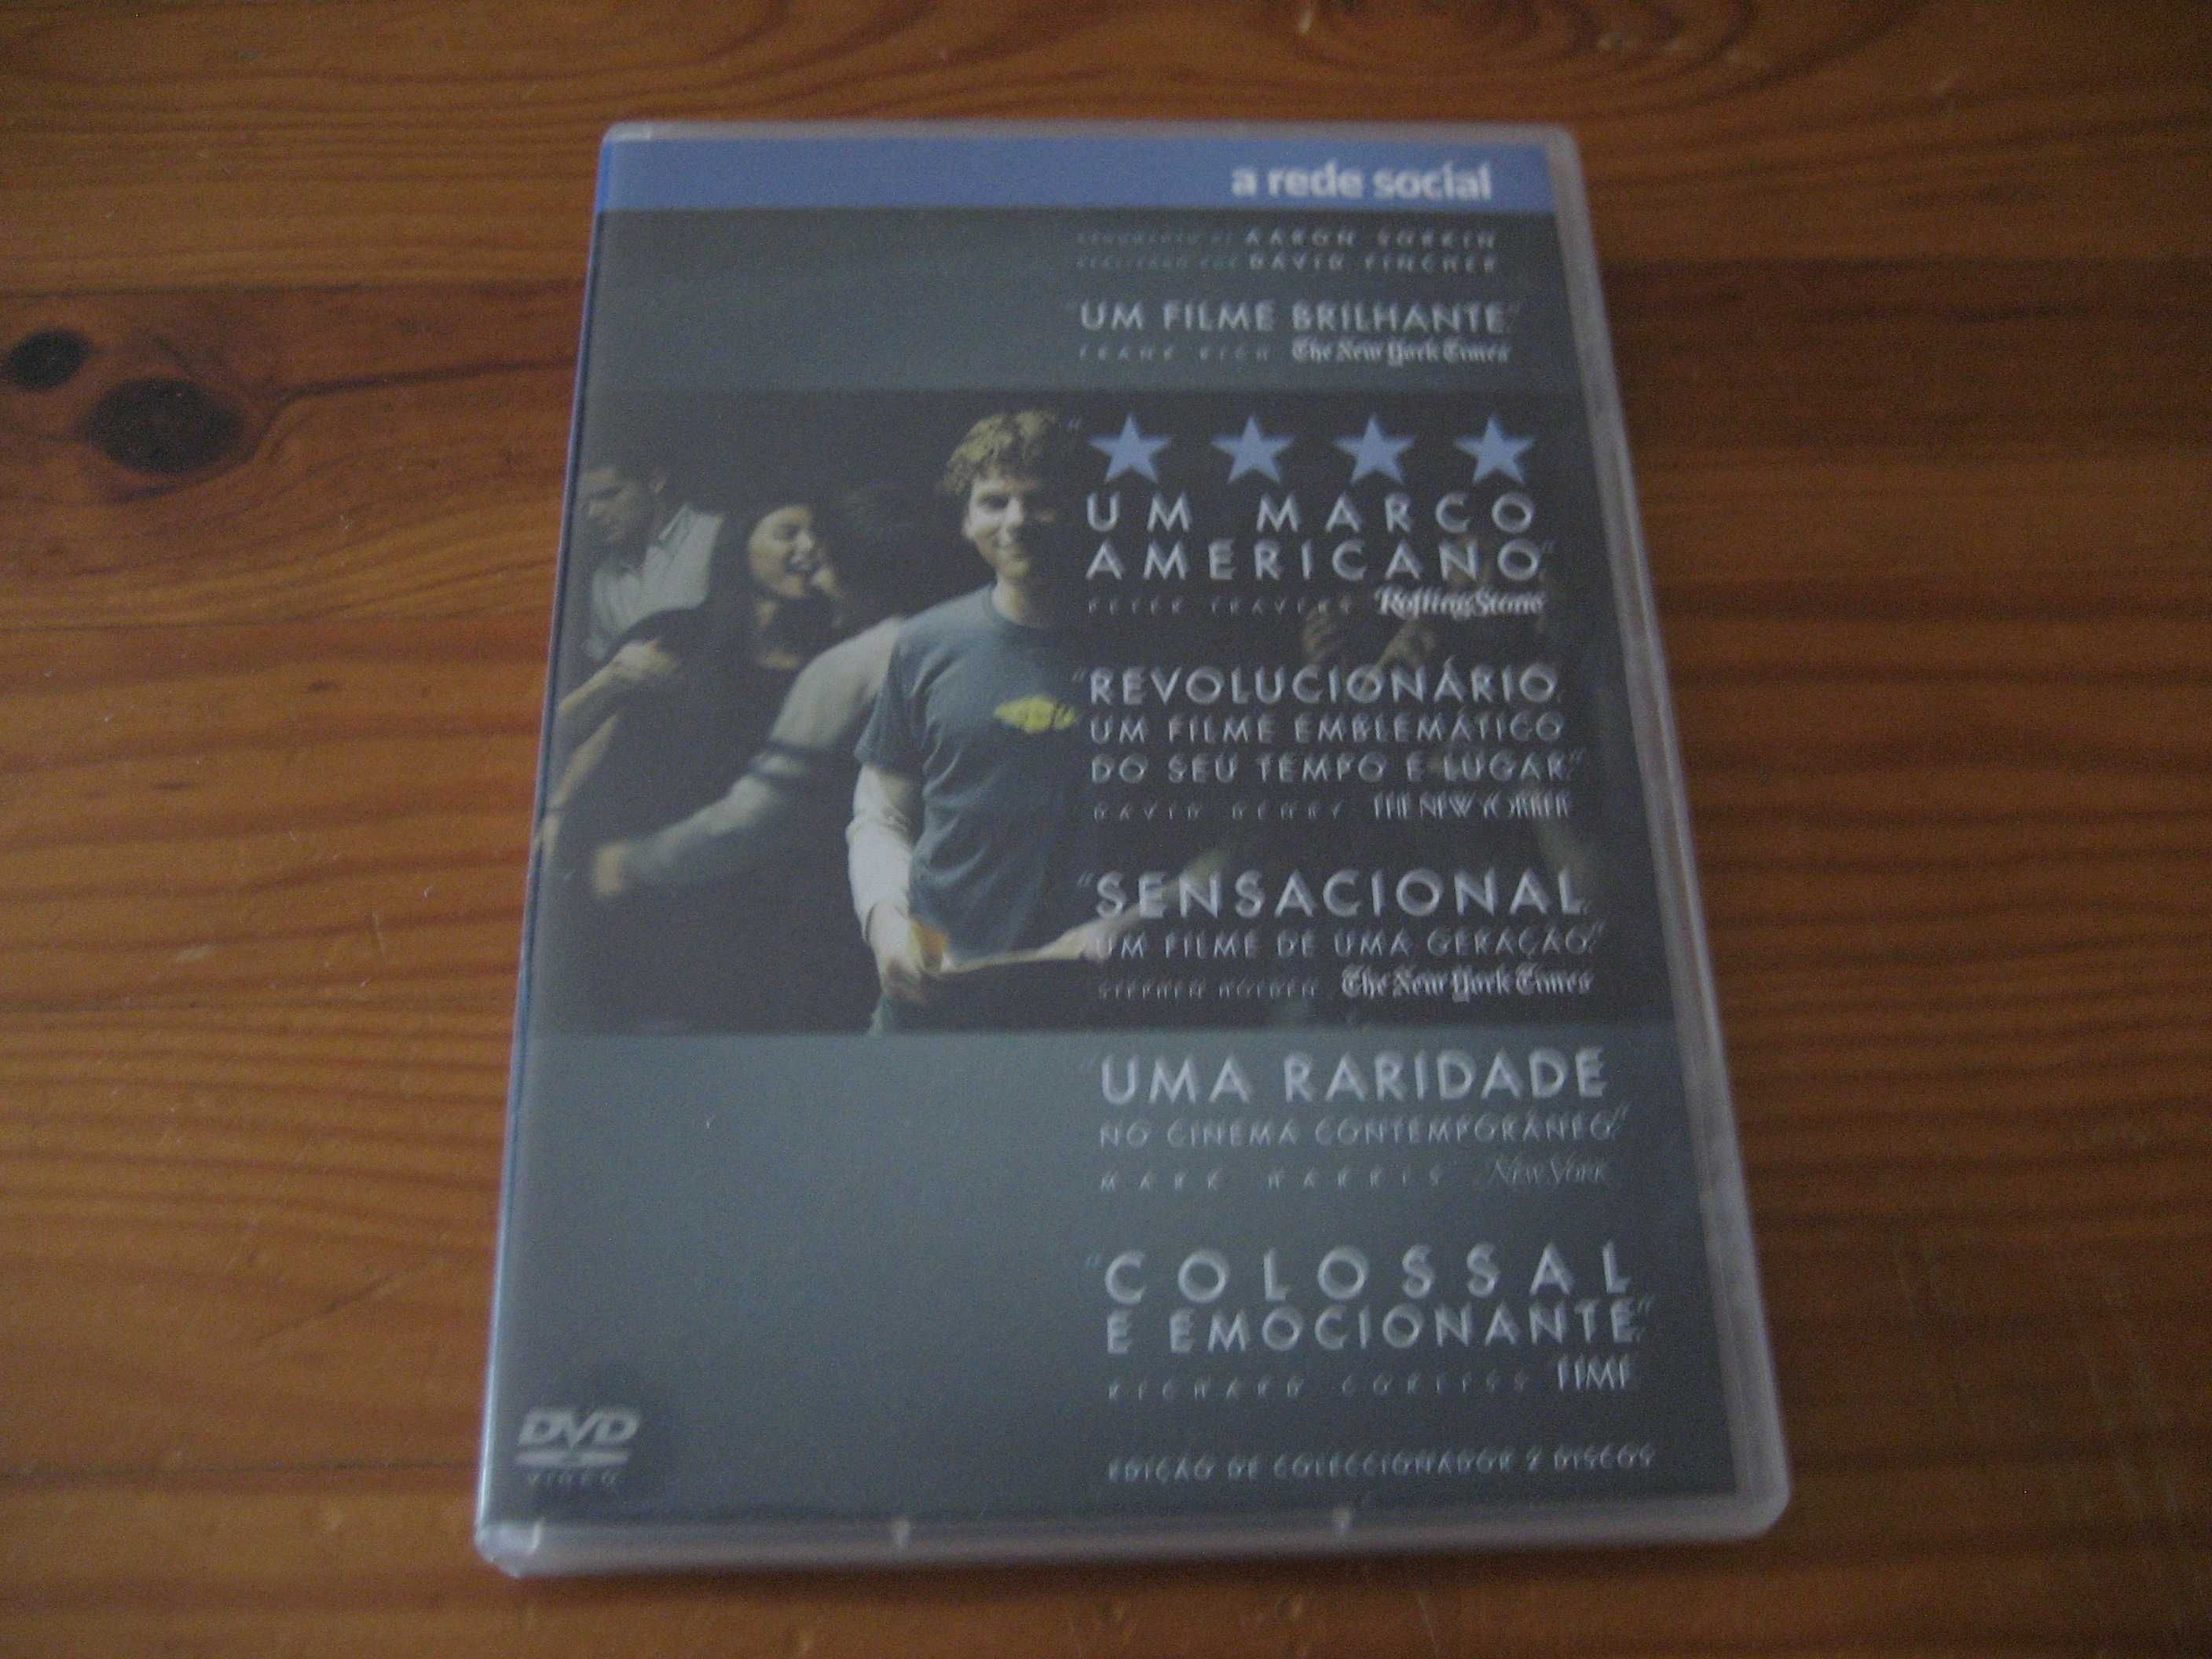 DVD Uma Casa na Pradaria, Portugal Tal & Qual, Tom Jobim, etc